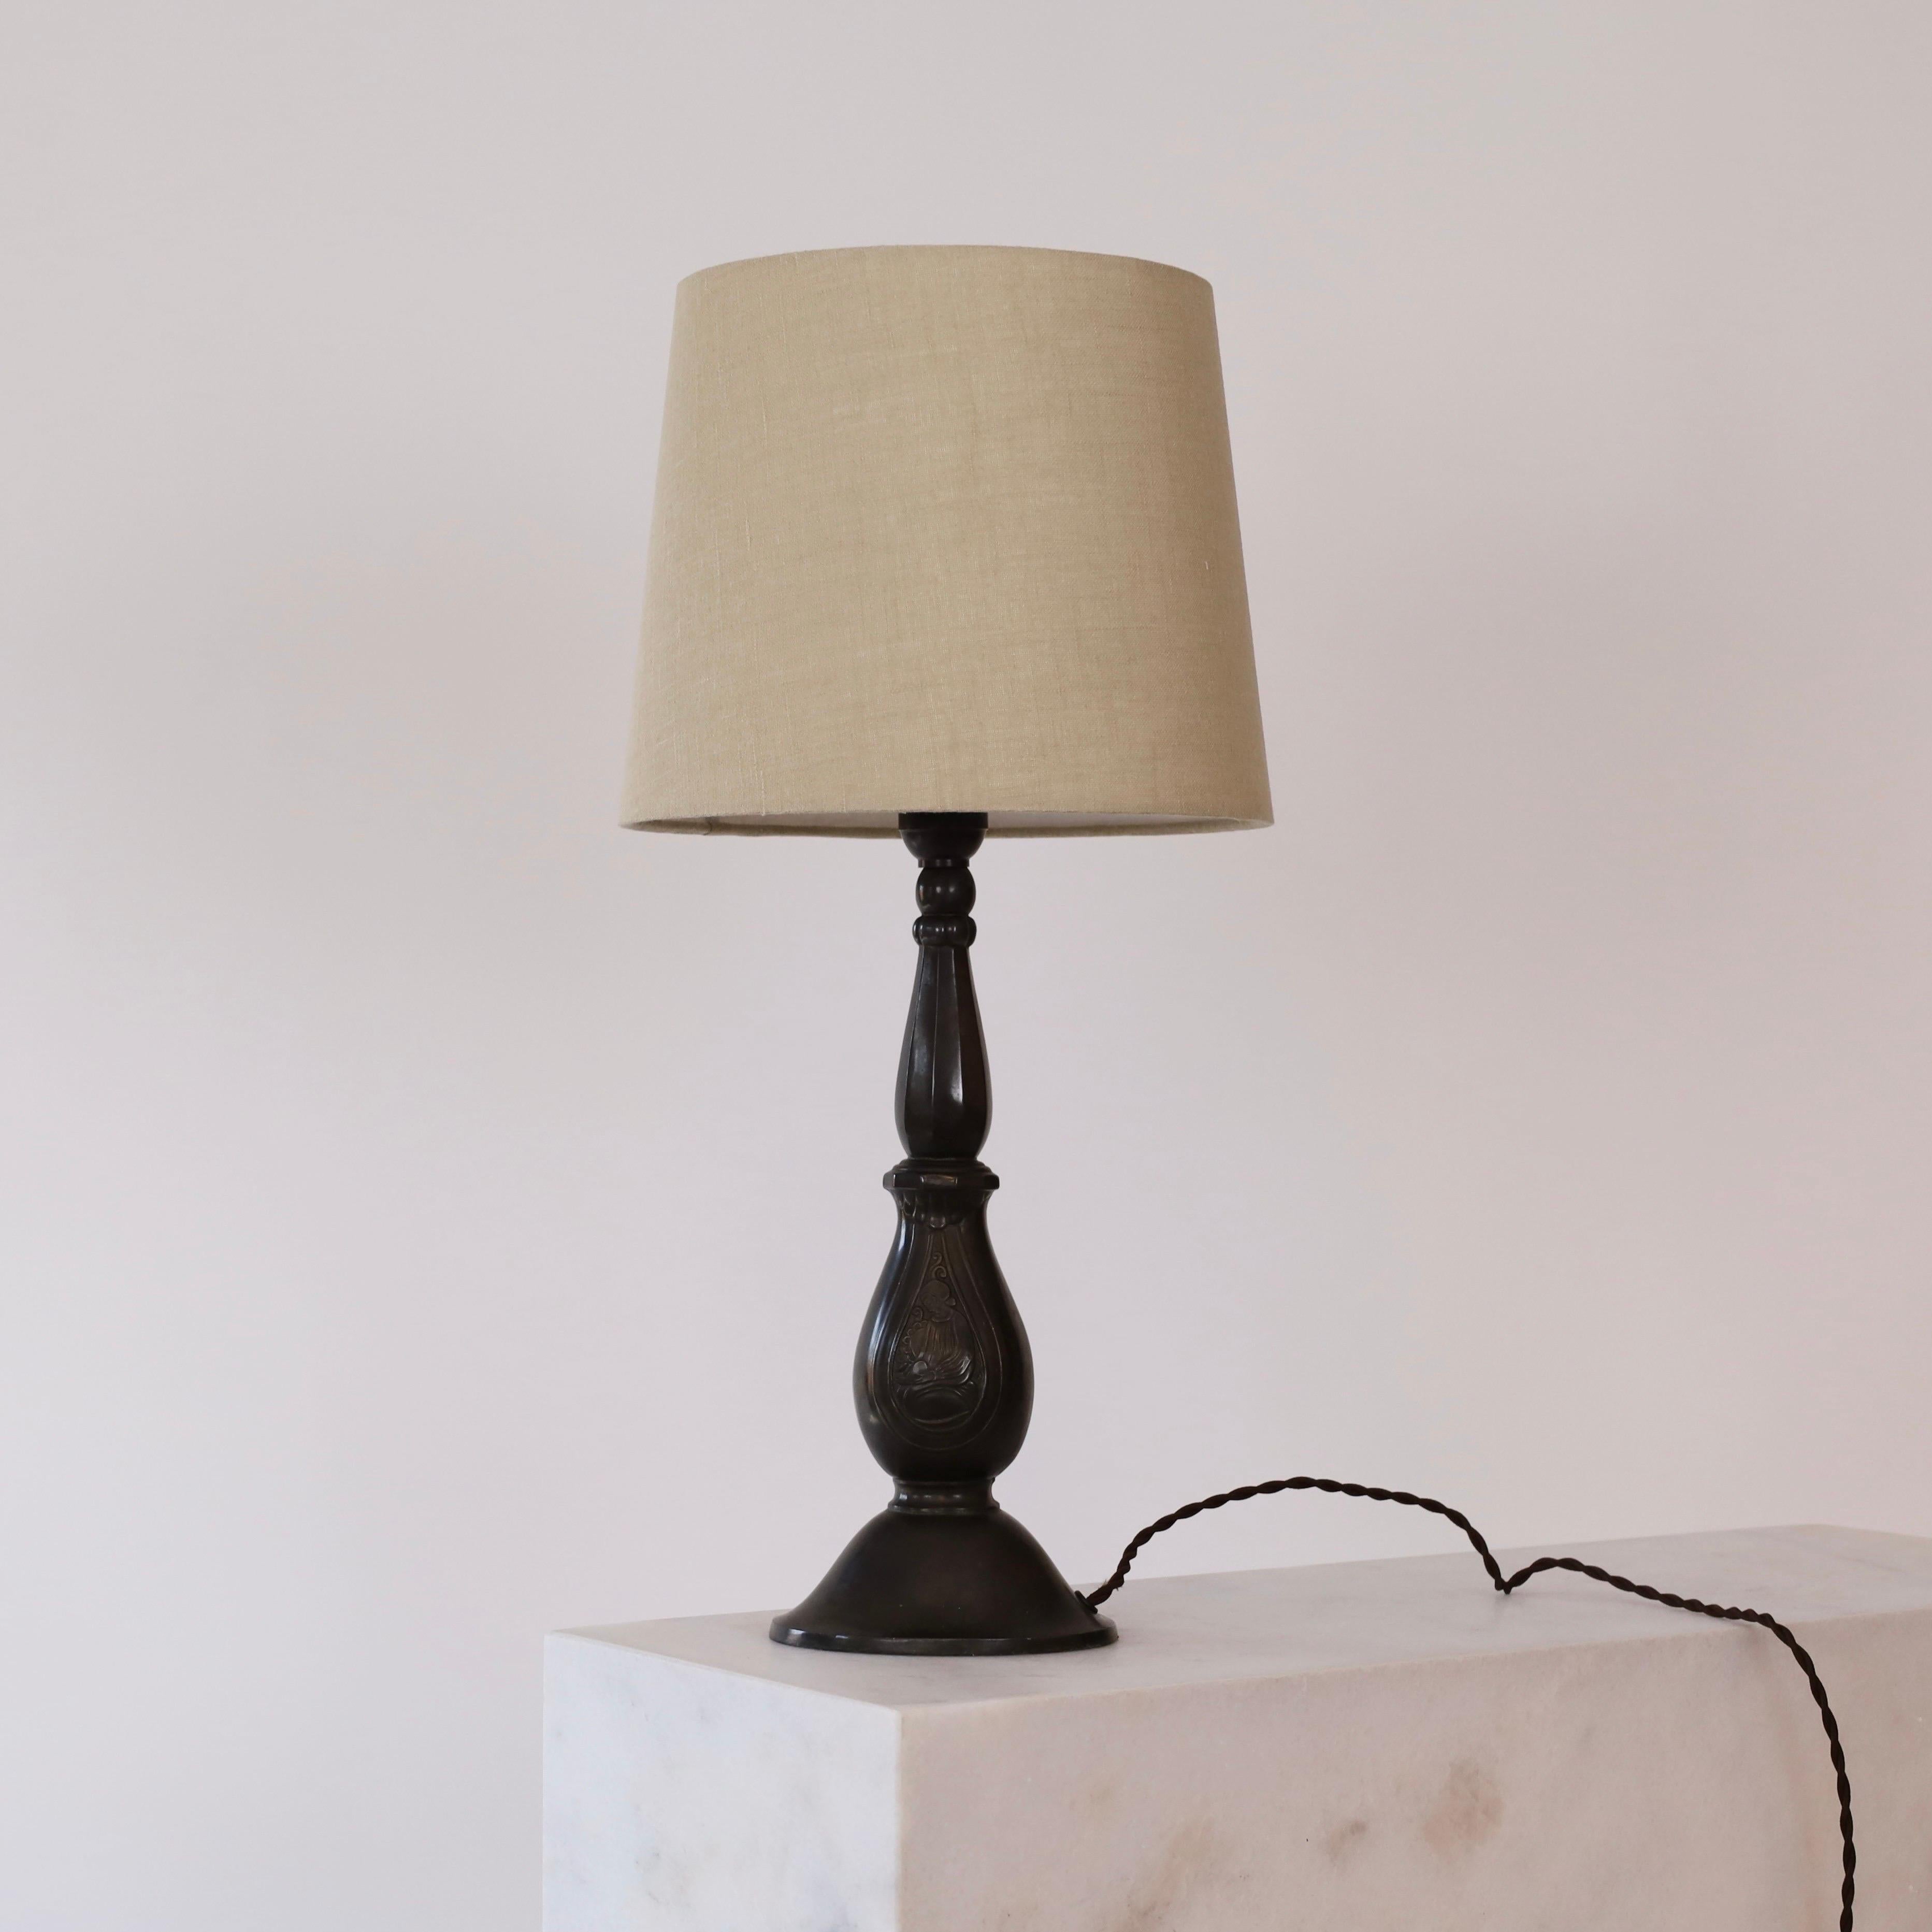 Eine Tischlampe von Just Andersen in tollem Vintage-Zustand. Es ist Teil von Just Andersens Frühwerk und ein echtes Zeugnis für seinen Beitrag zur dänischen Art-déco-Bewegung in den 1920er Jahren. Ein Stück für ein schönes Zuhause.

* Kurvige